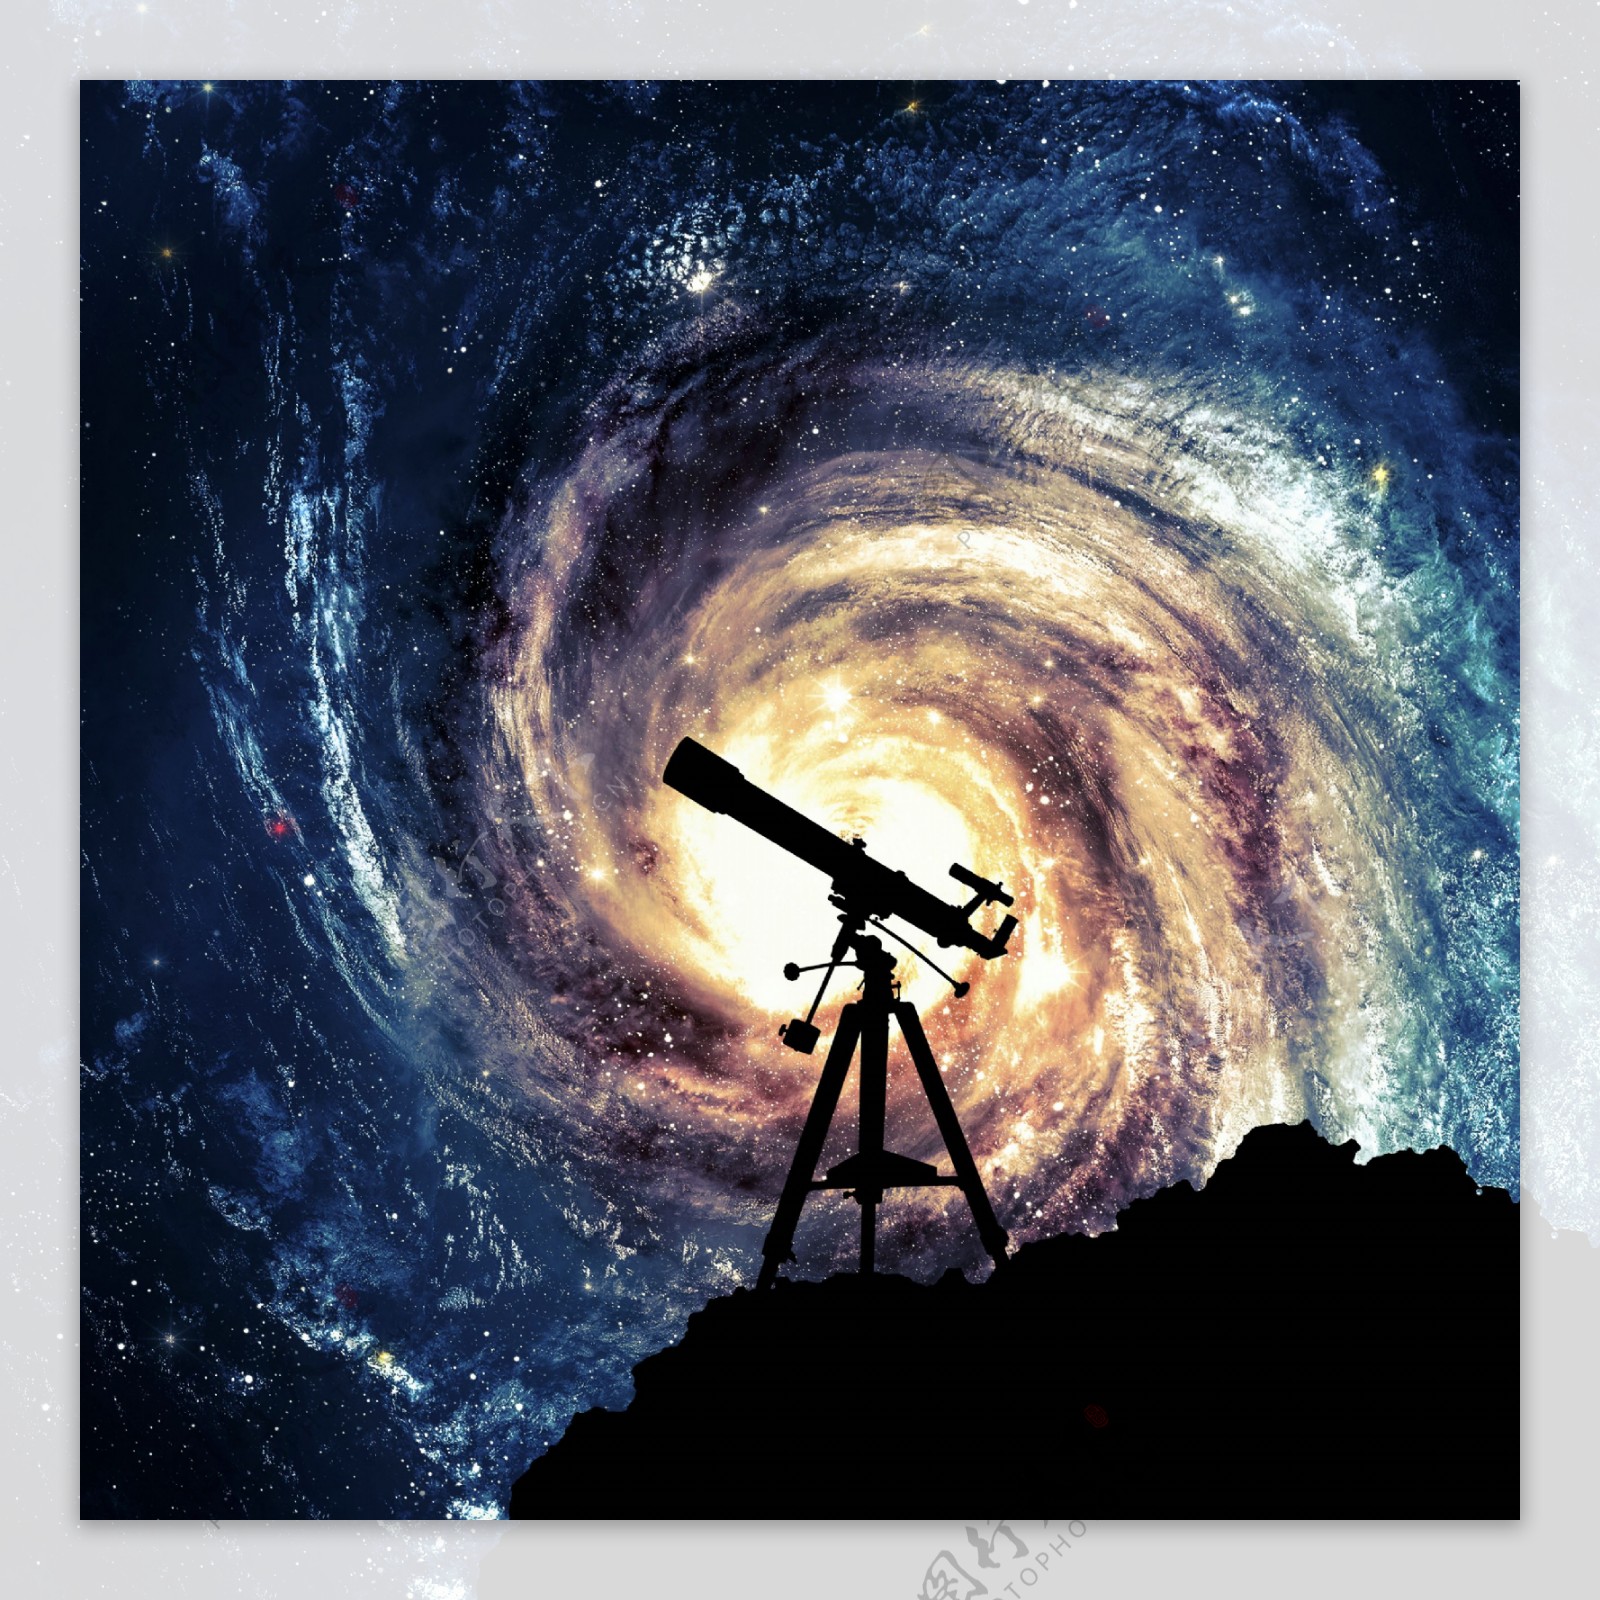 旋涡天文望远镜唯美星空背景